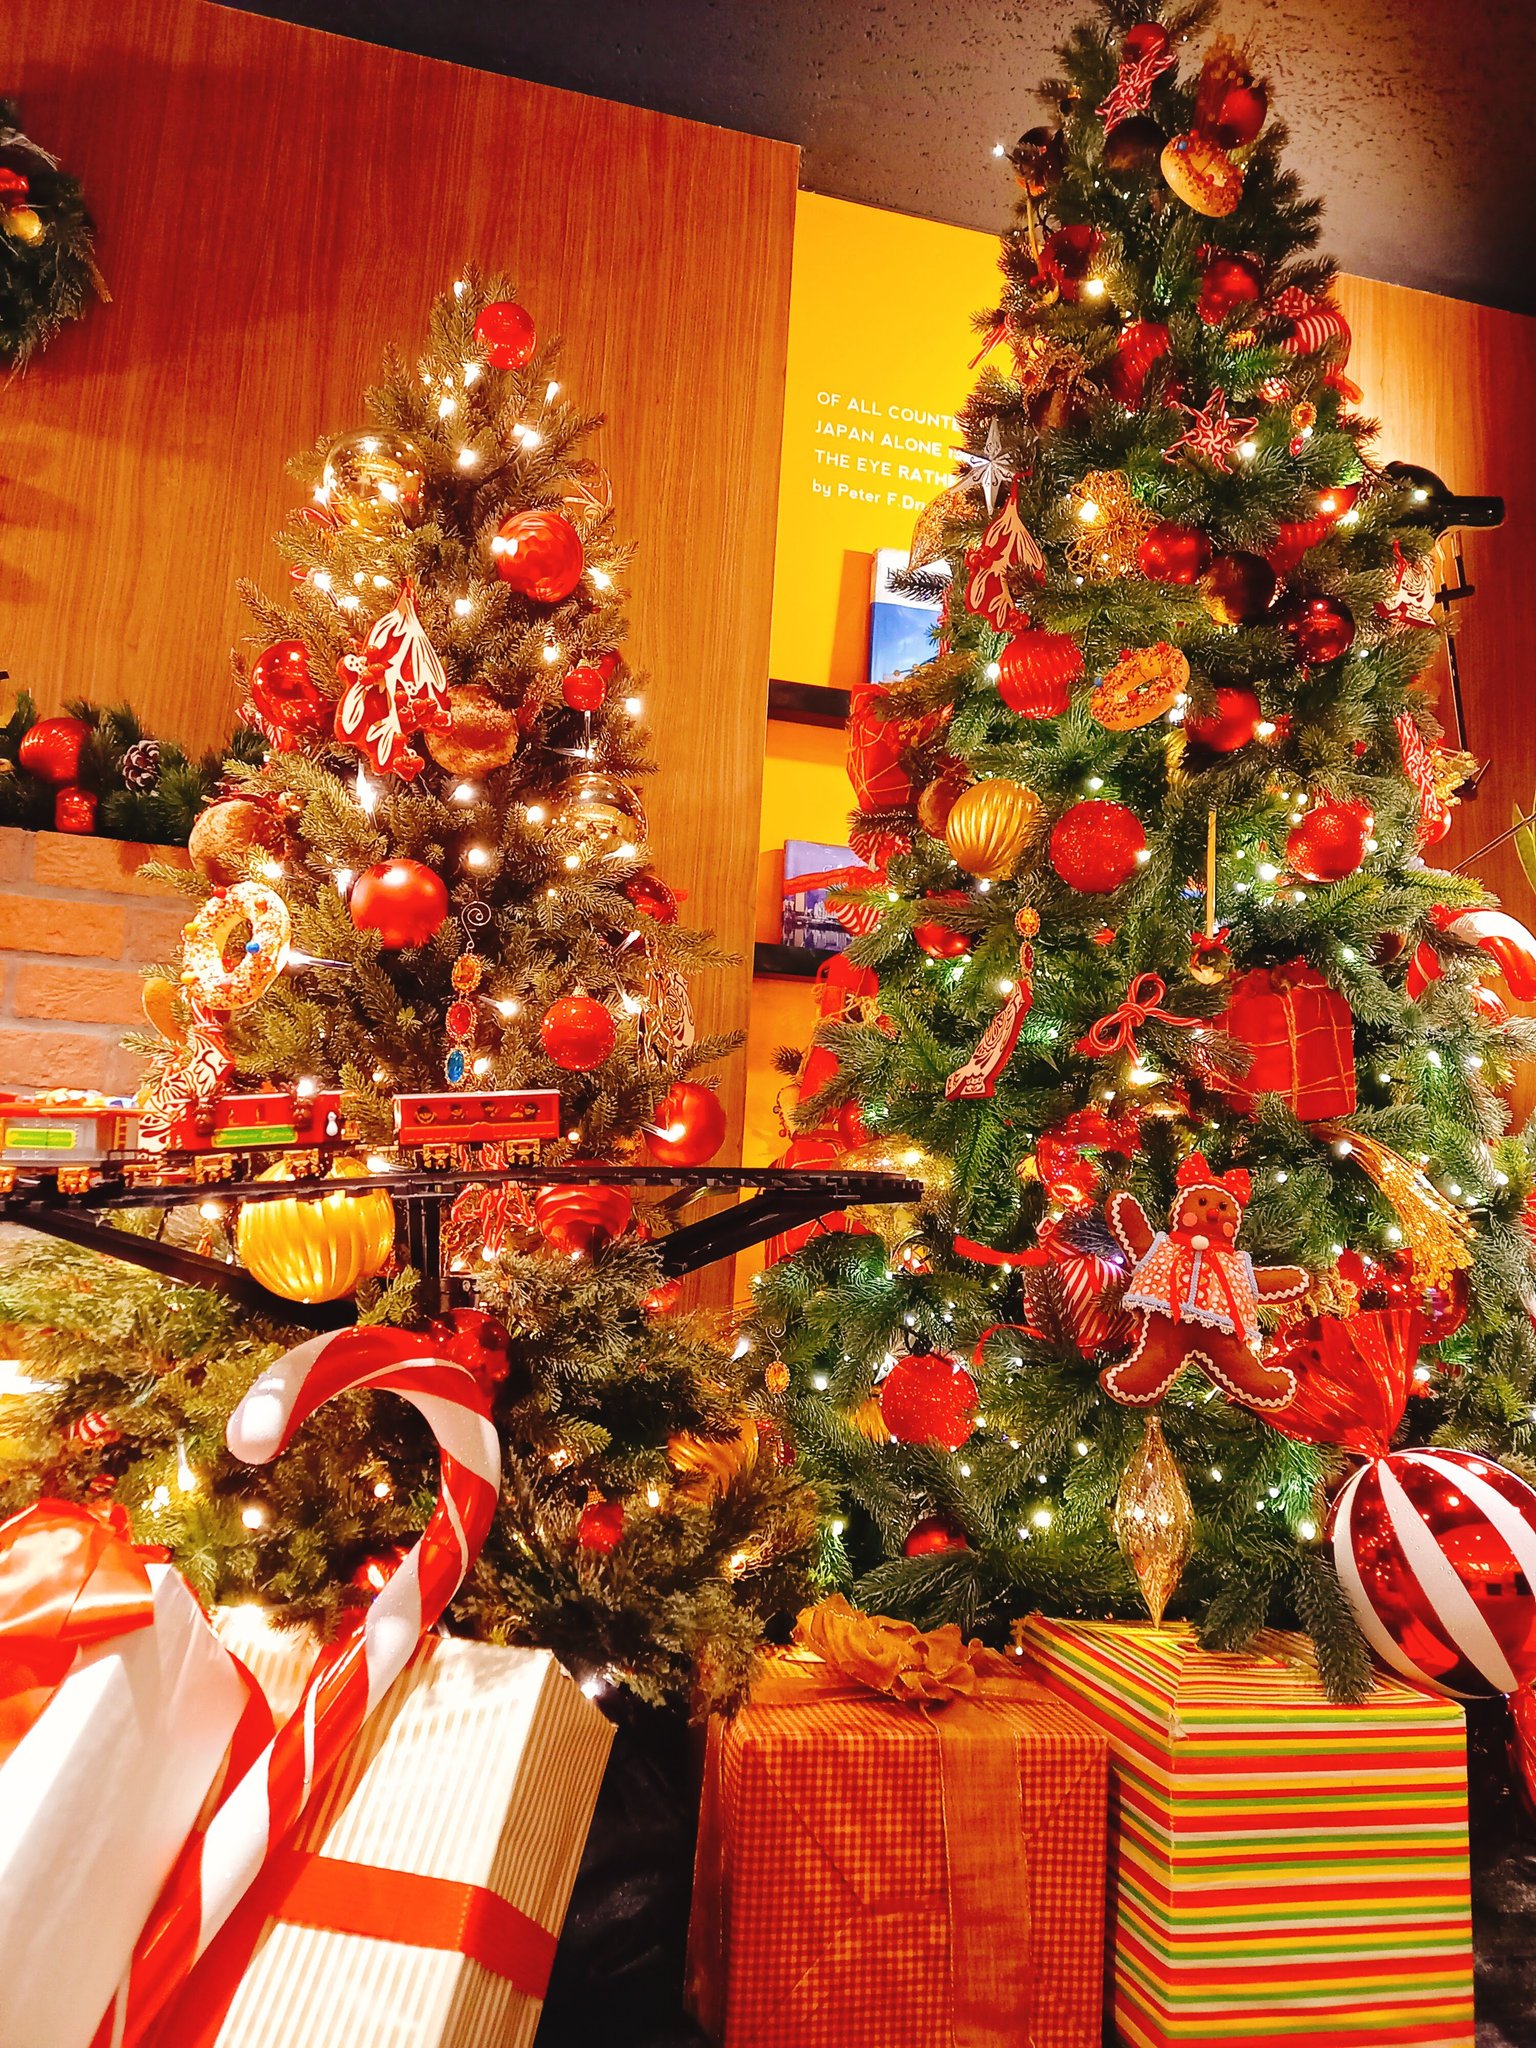 公式 成田空港 Japan Duty Free メリークリスマス 皆さんどうお過ごしですか 思い思いの クリスマスを楽しみましょう クリスマス イベント 成田空港 免税店 プレゼント T Co Srlcs1ovif Twitter